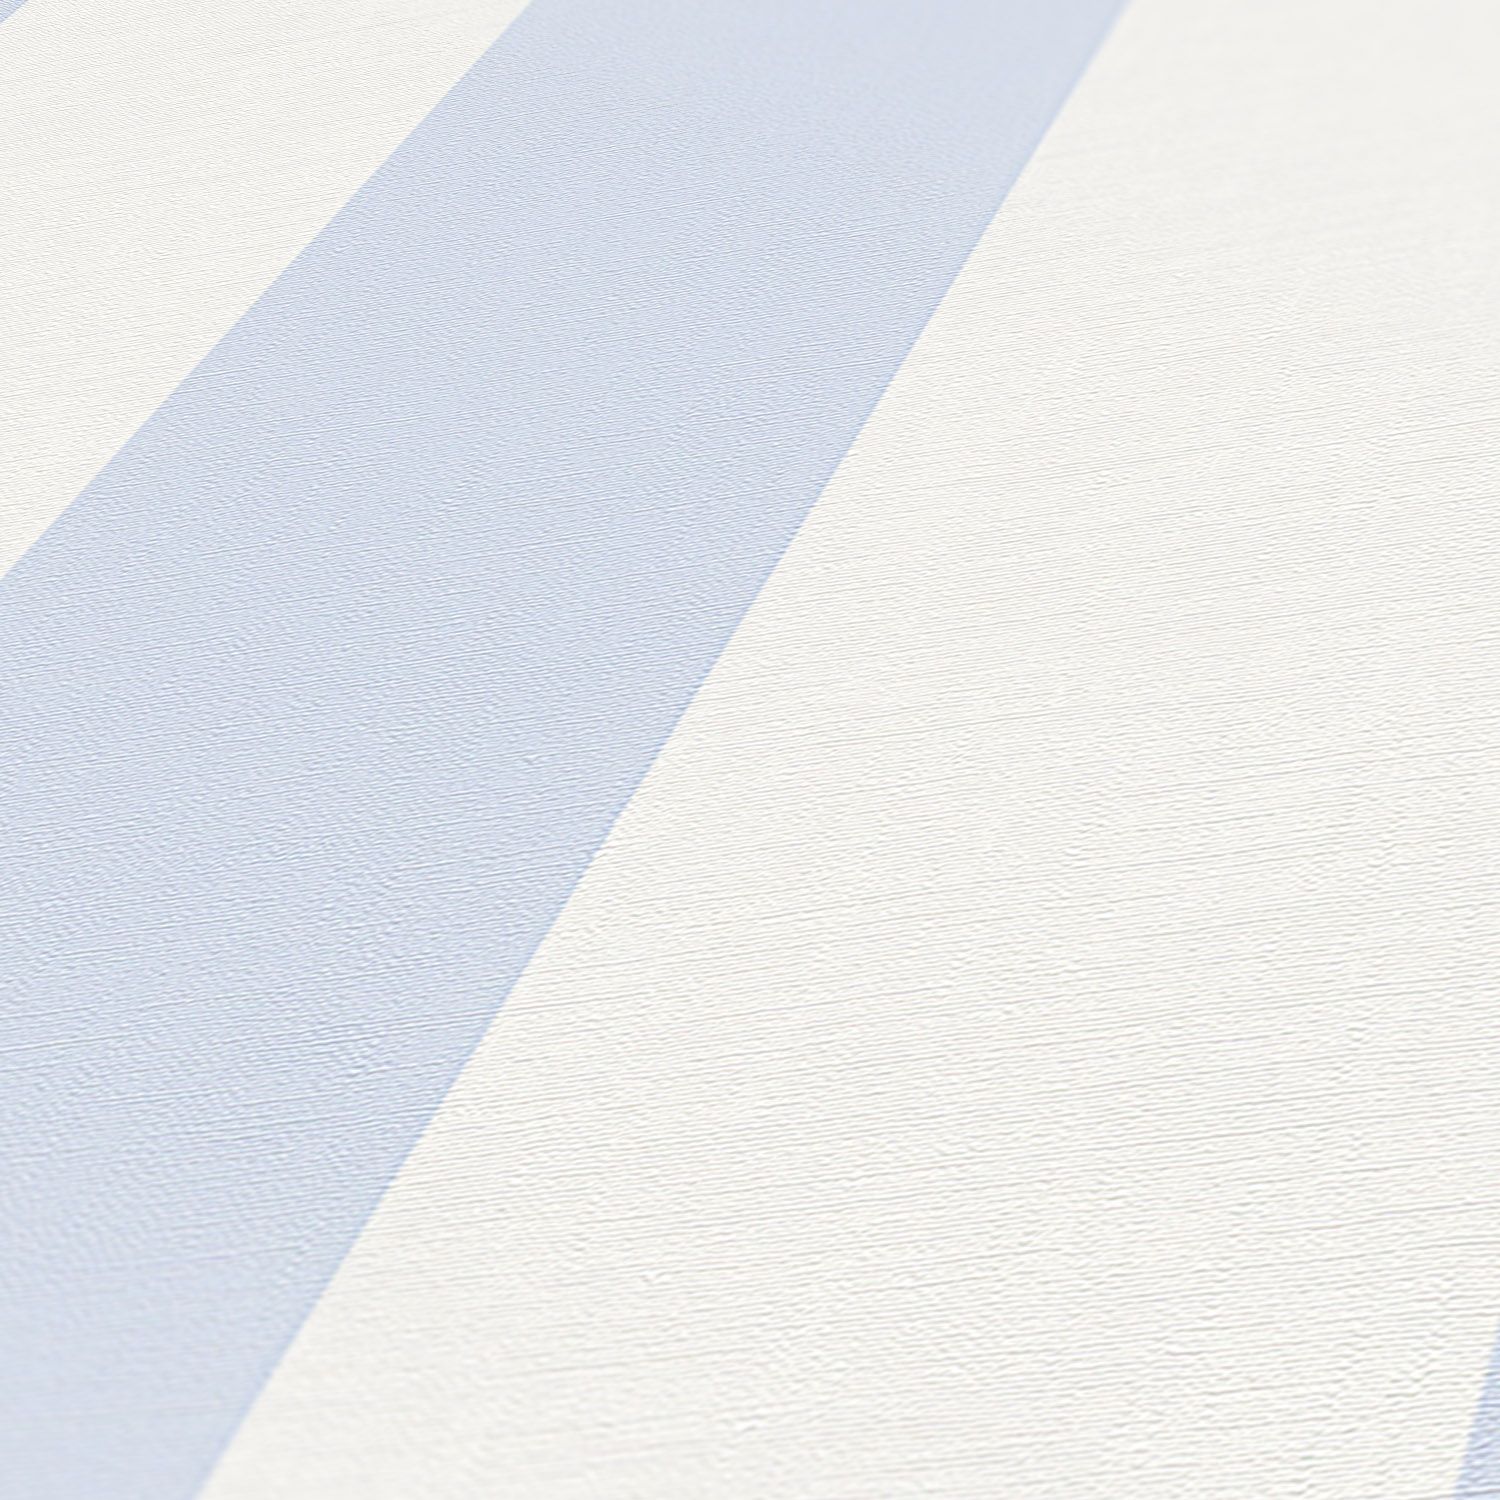 A.S. Création Liberté, Streifentapete, blau, weiß 314024